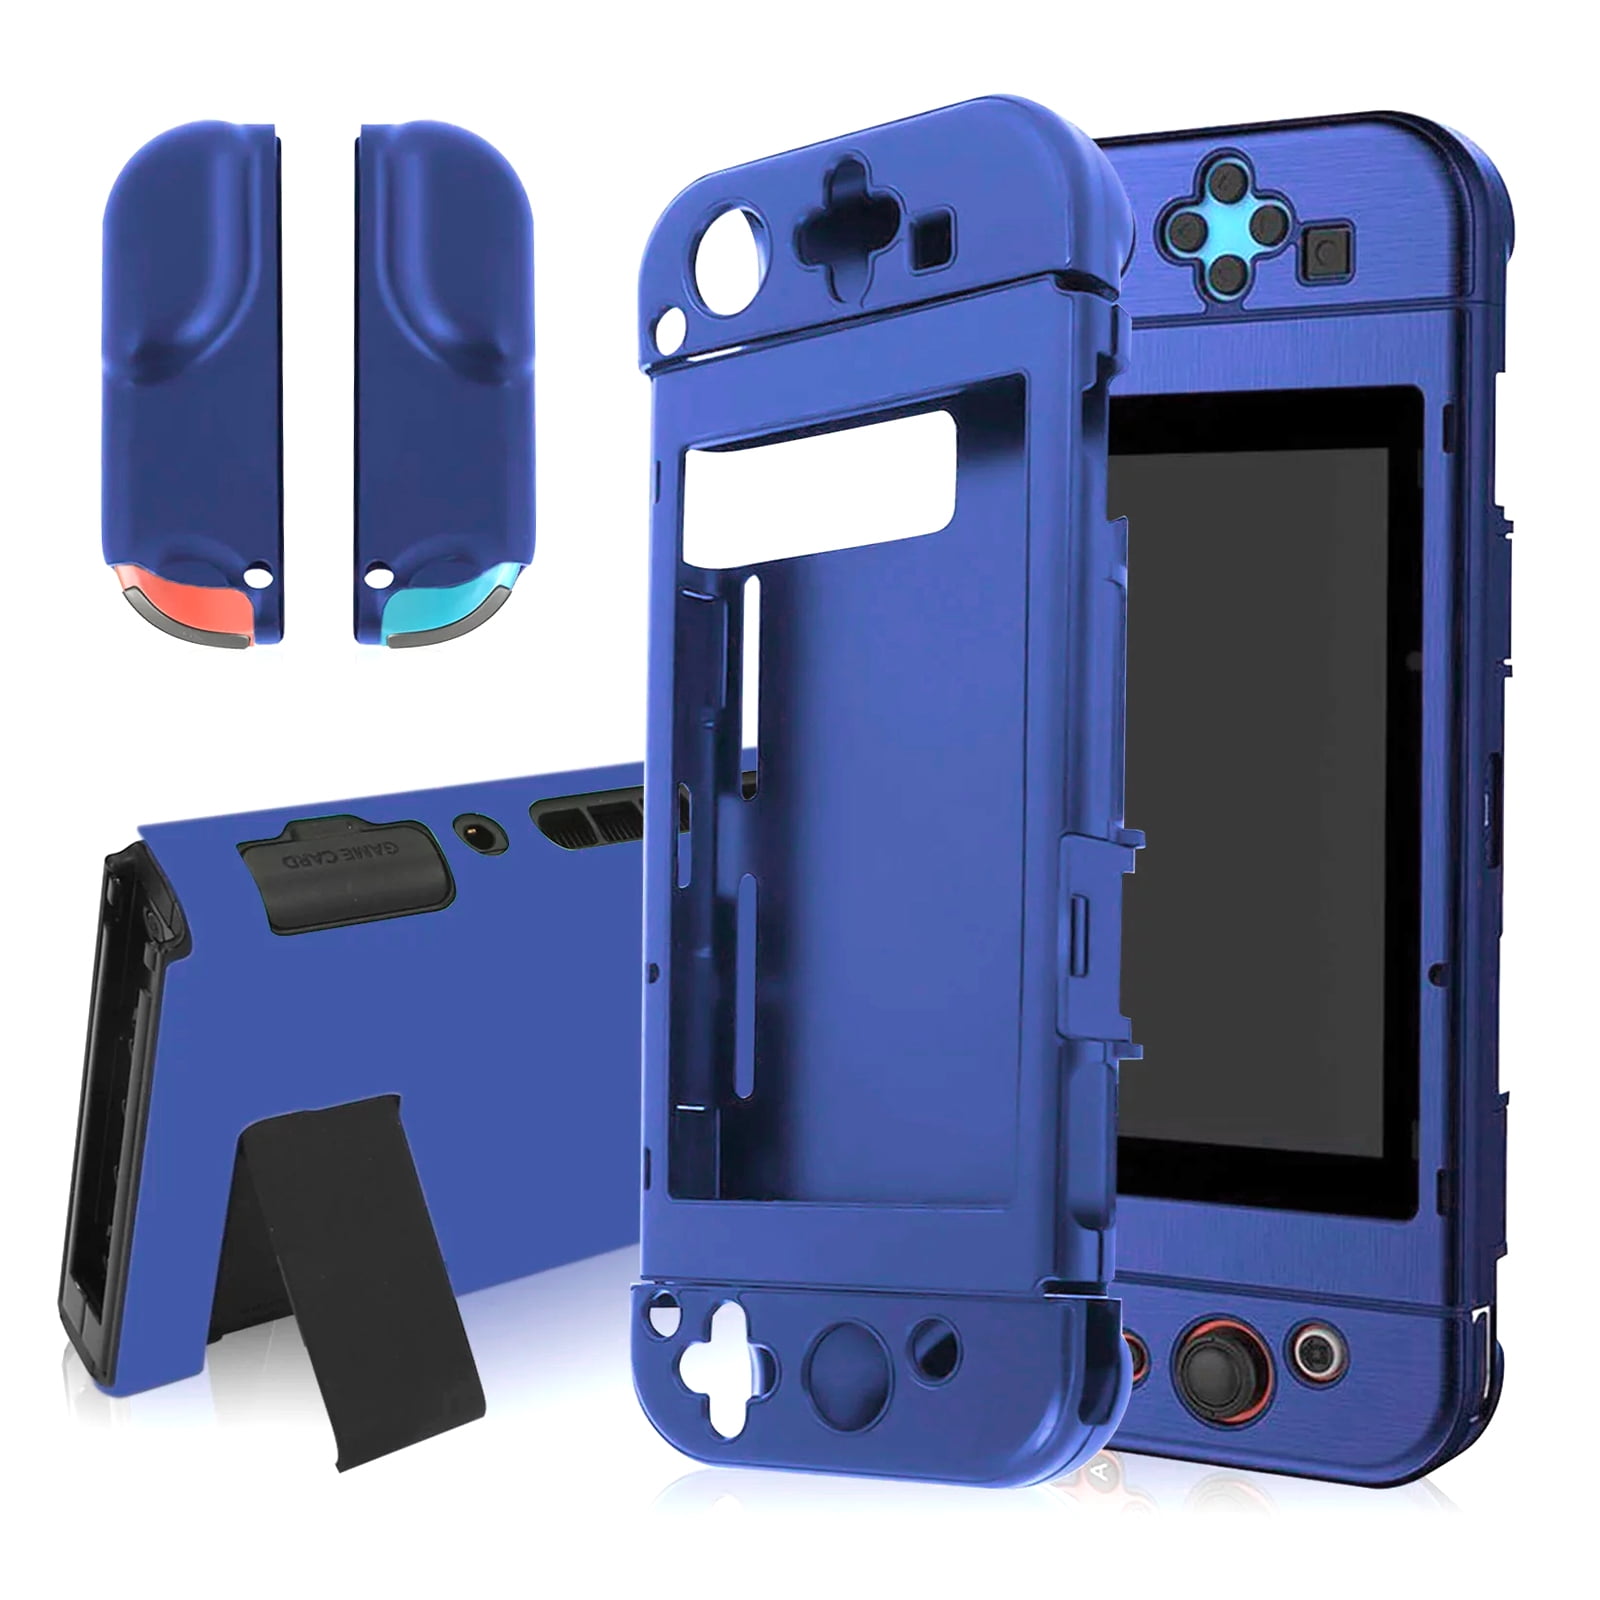 Housse étui silicone de protection pour console Nintendo Switch - Bleu -  Etui et protection gaming - Achat & prix